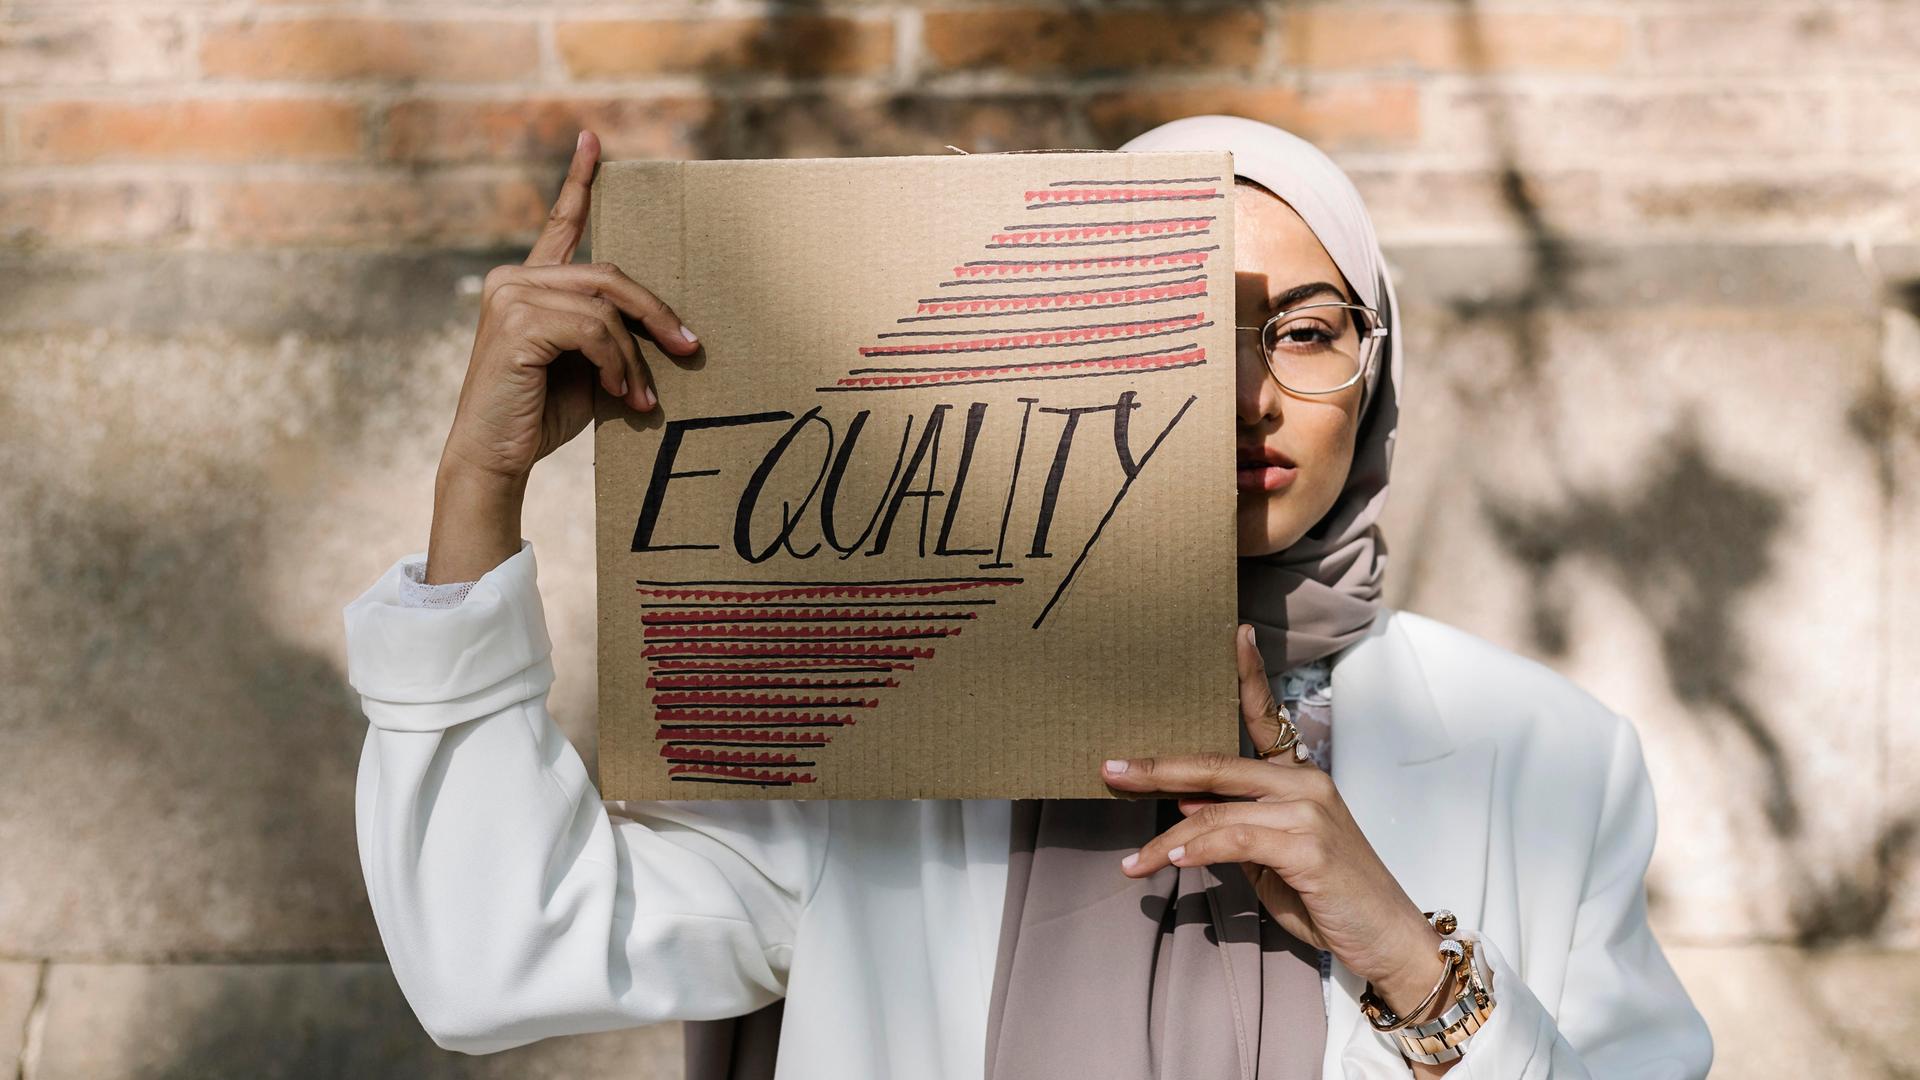 Eine junge Frau mit Kopftuch hält ein Schild vor ihr Gesicht, auf dem „Equality“ steht.